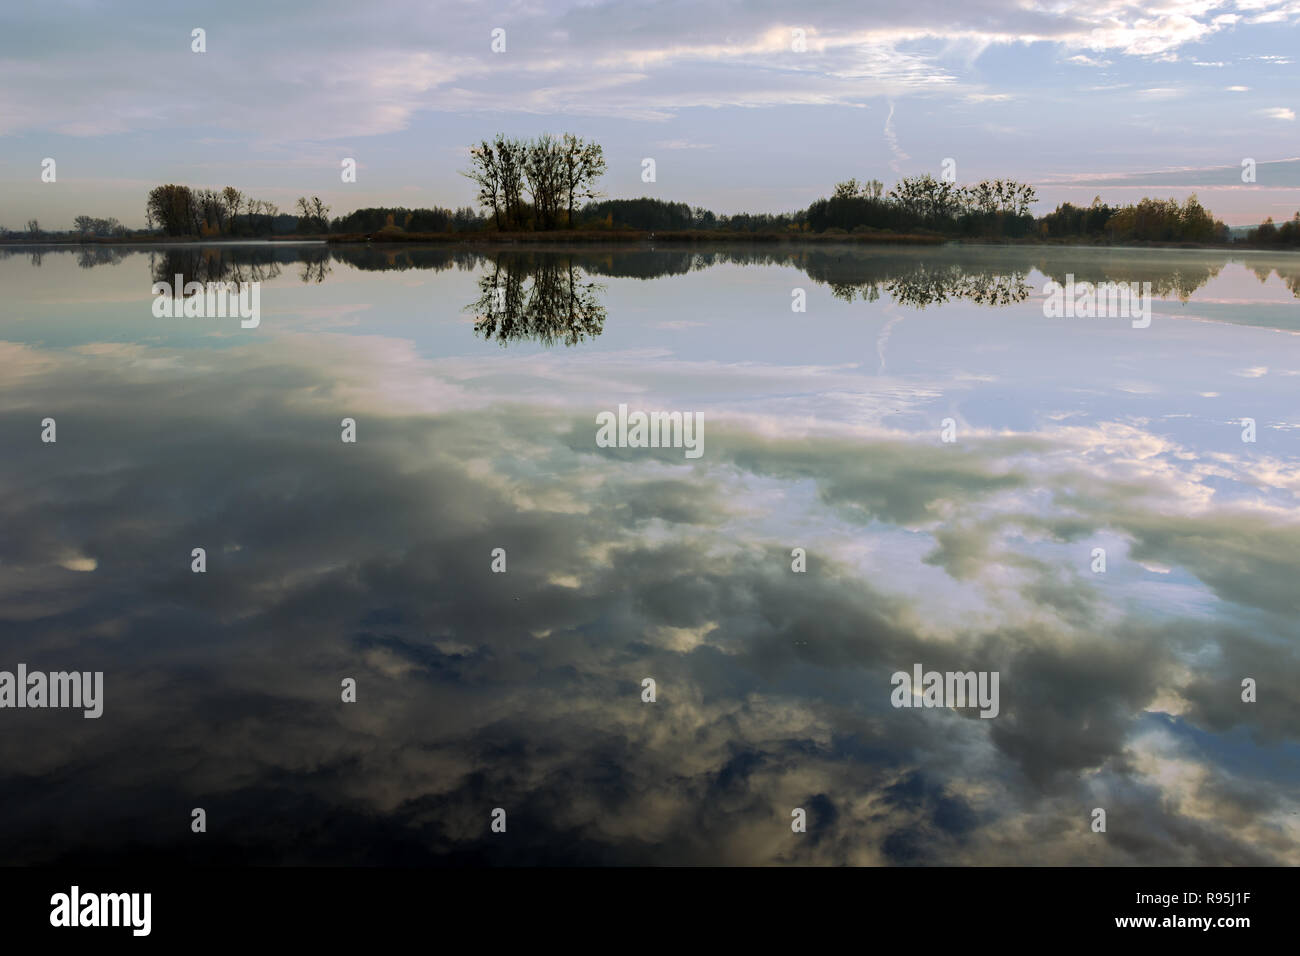 Die Reflexion der Wolken im Wasser eine ruhige See und Bäume am Ufer Stockfoto